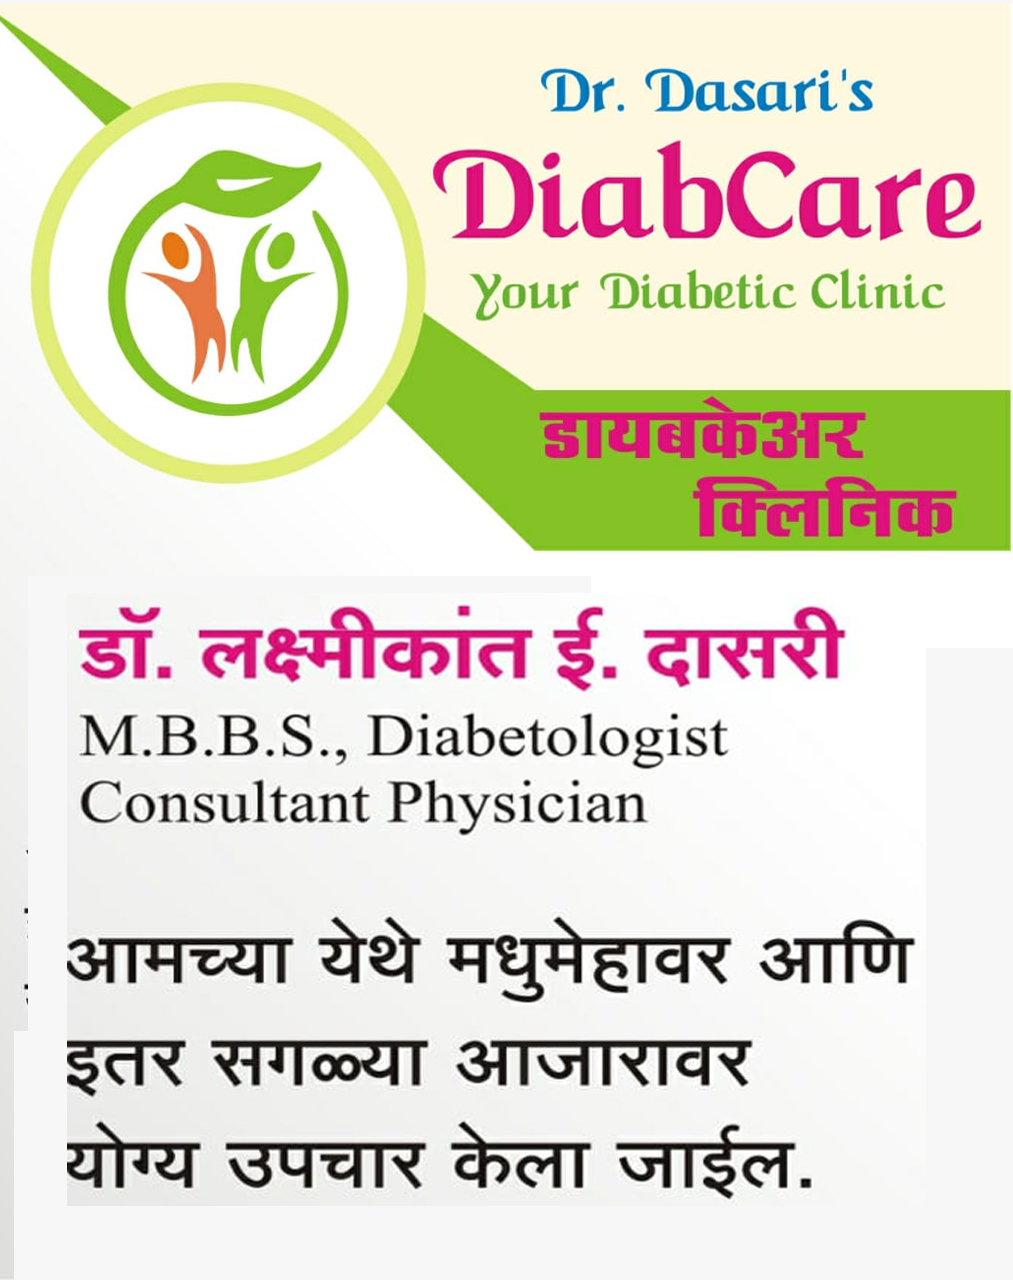 DR. DASARI DIABCARE CLINIC| SolapurMall.com